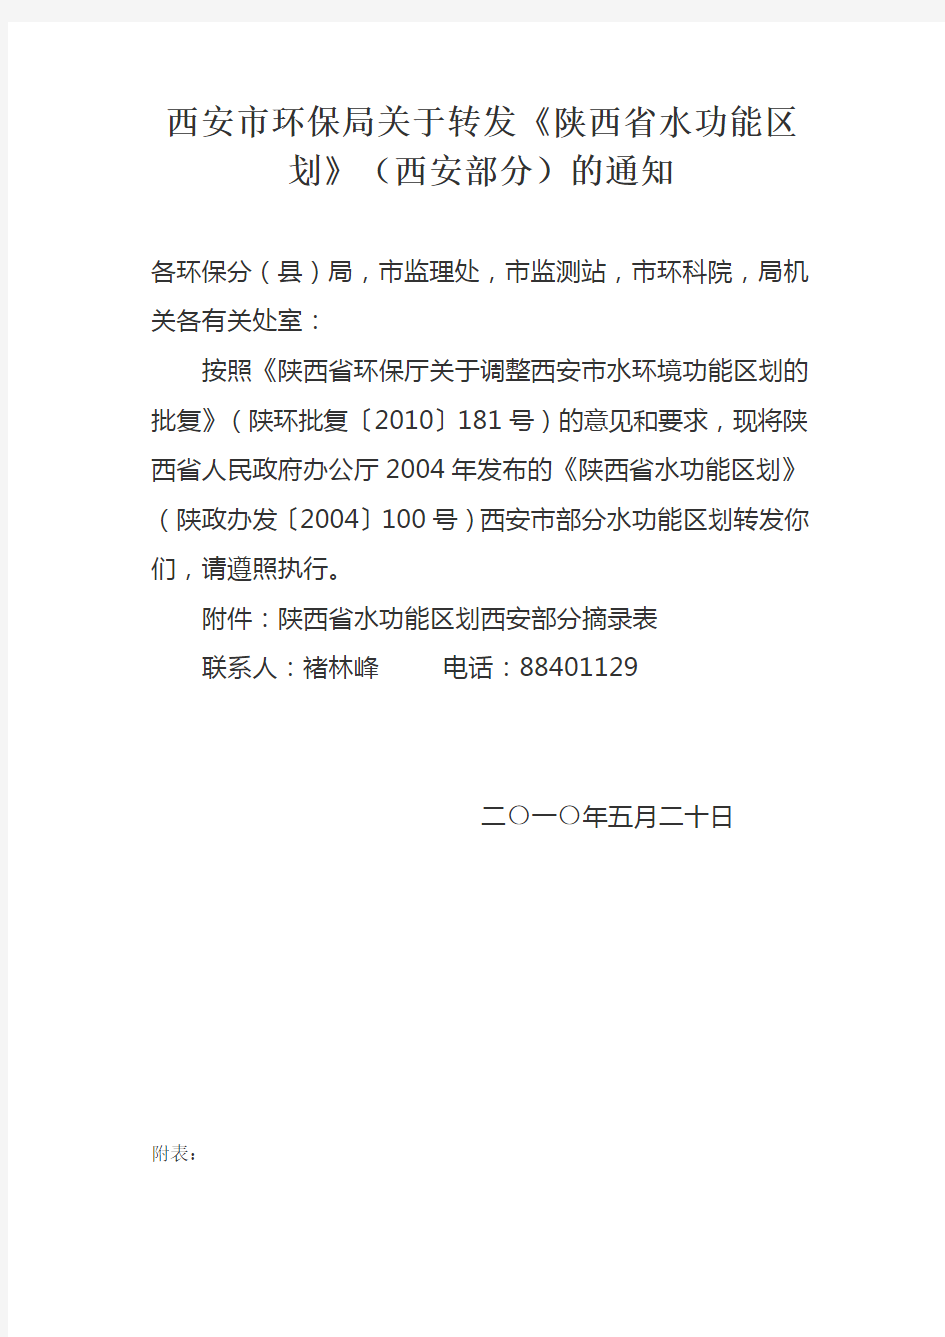 西安市环保局关于转发《陕西省水功能区划》(西安部分)的通知